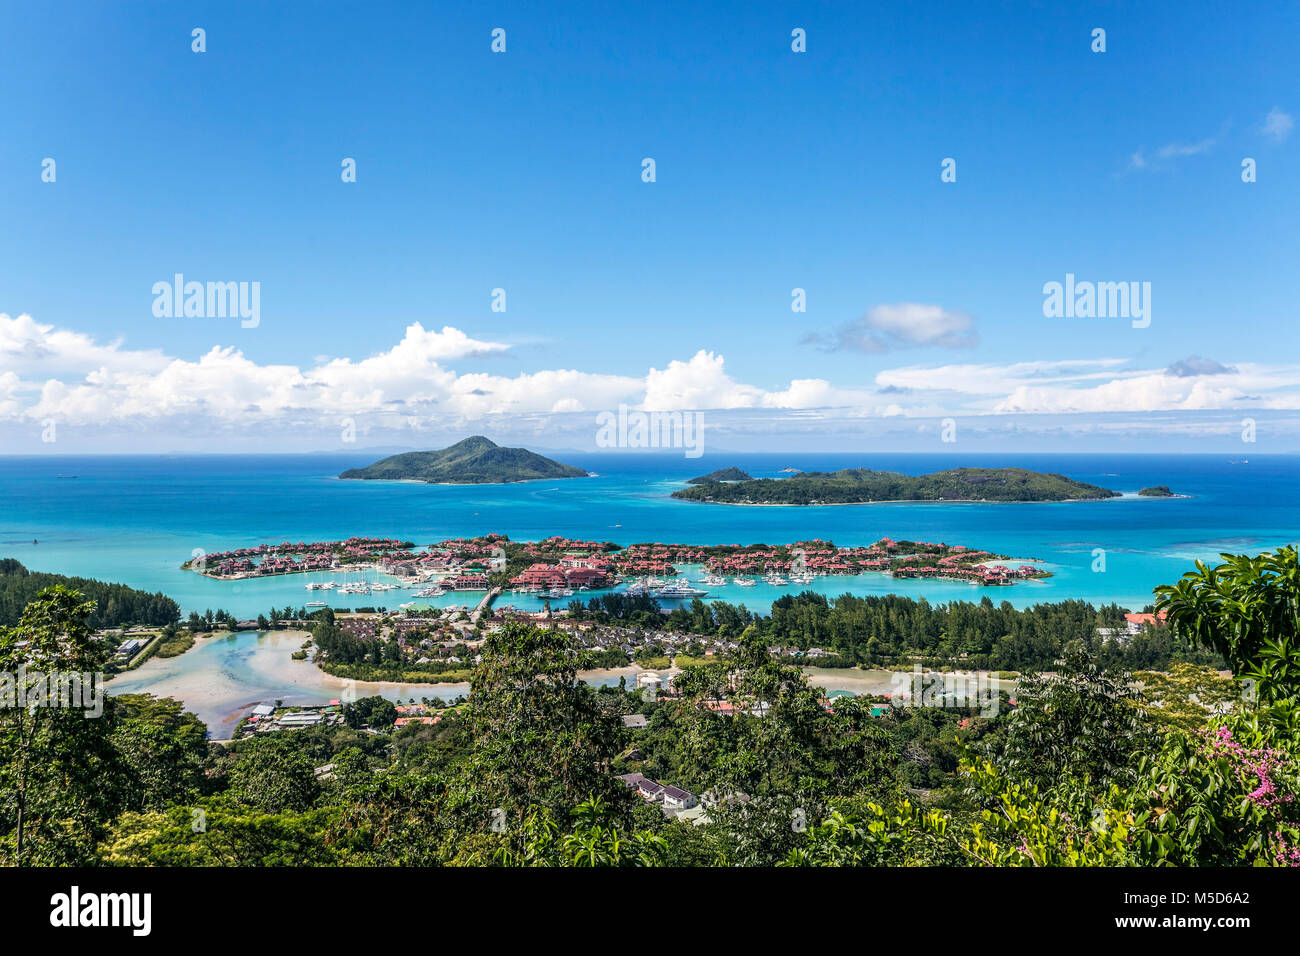 Osten Kosten mit Resort Eden Island, Ile Au Cerf, Ste Anne Marine National Park, Mahe Island, Seychellen Stockfoto